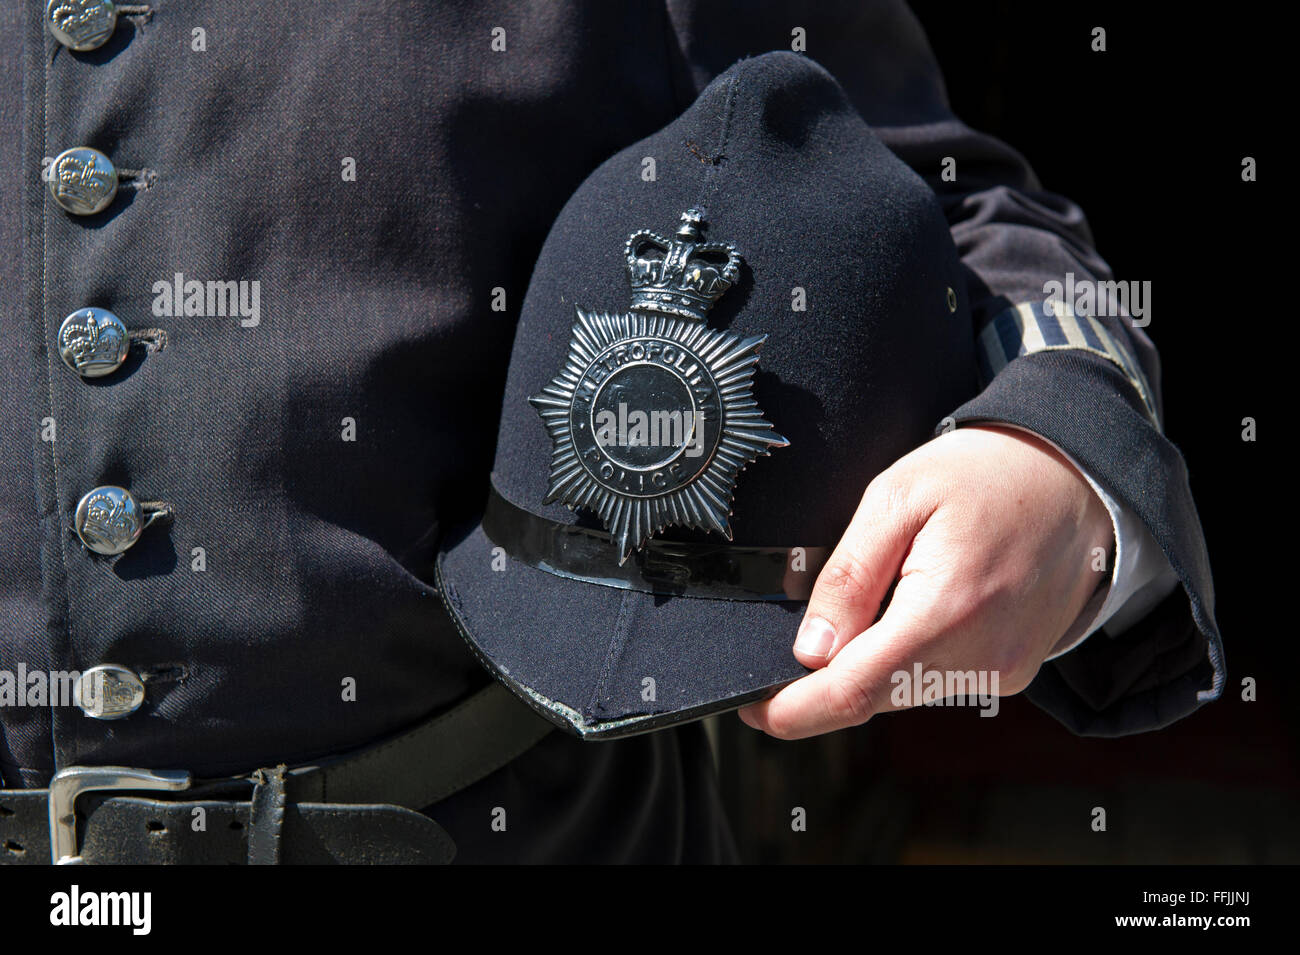 Un homme tenant un vieux casque de police à l'extérieur du célèbre musée Sherlock Holmes à Baker Street, London, United Kingdom. Banque D'Images